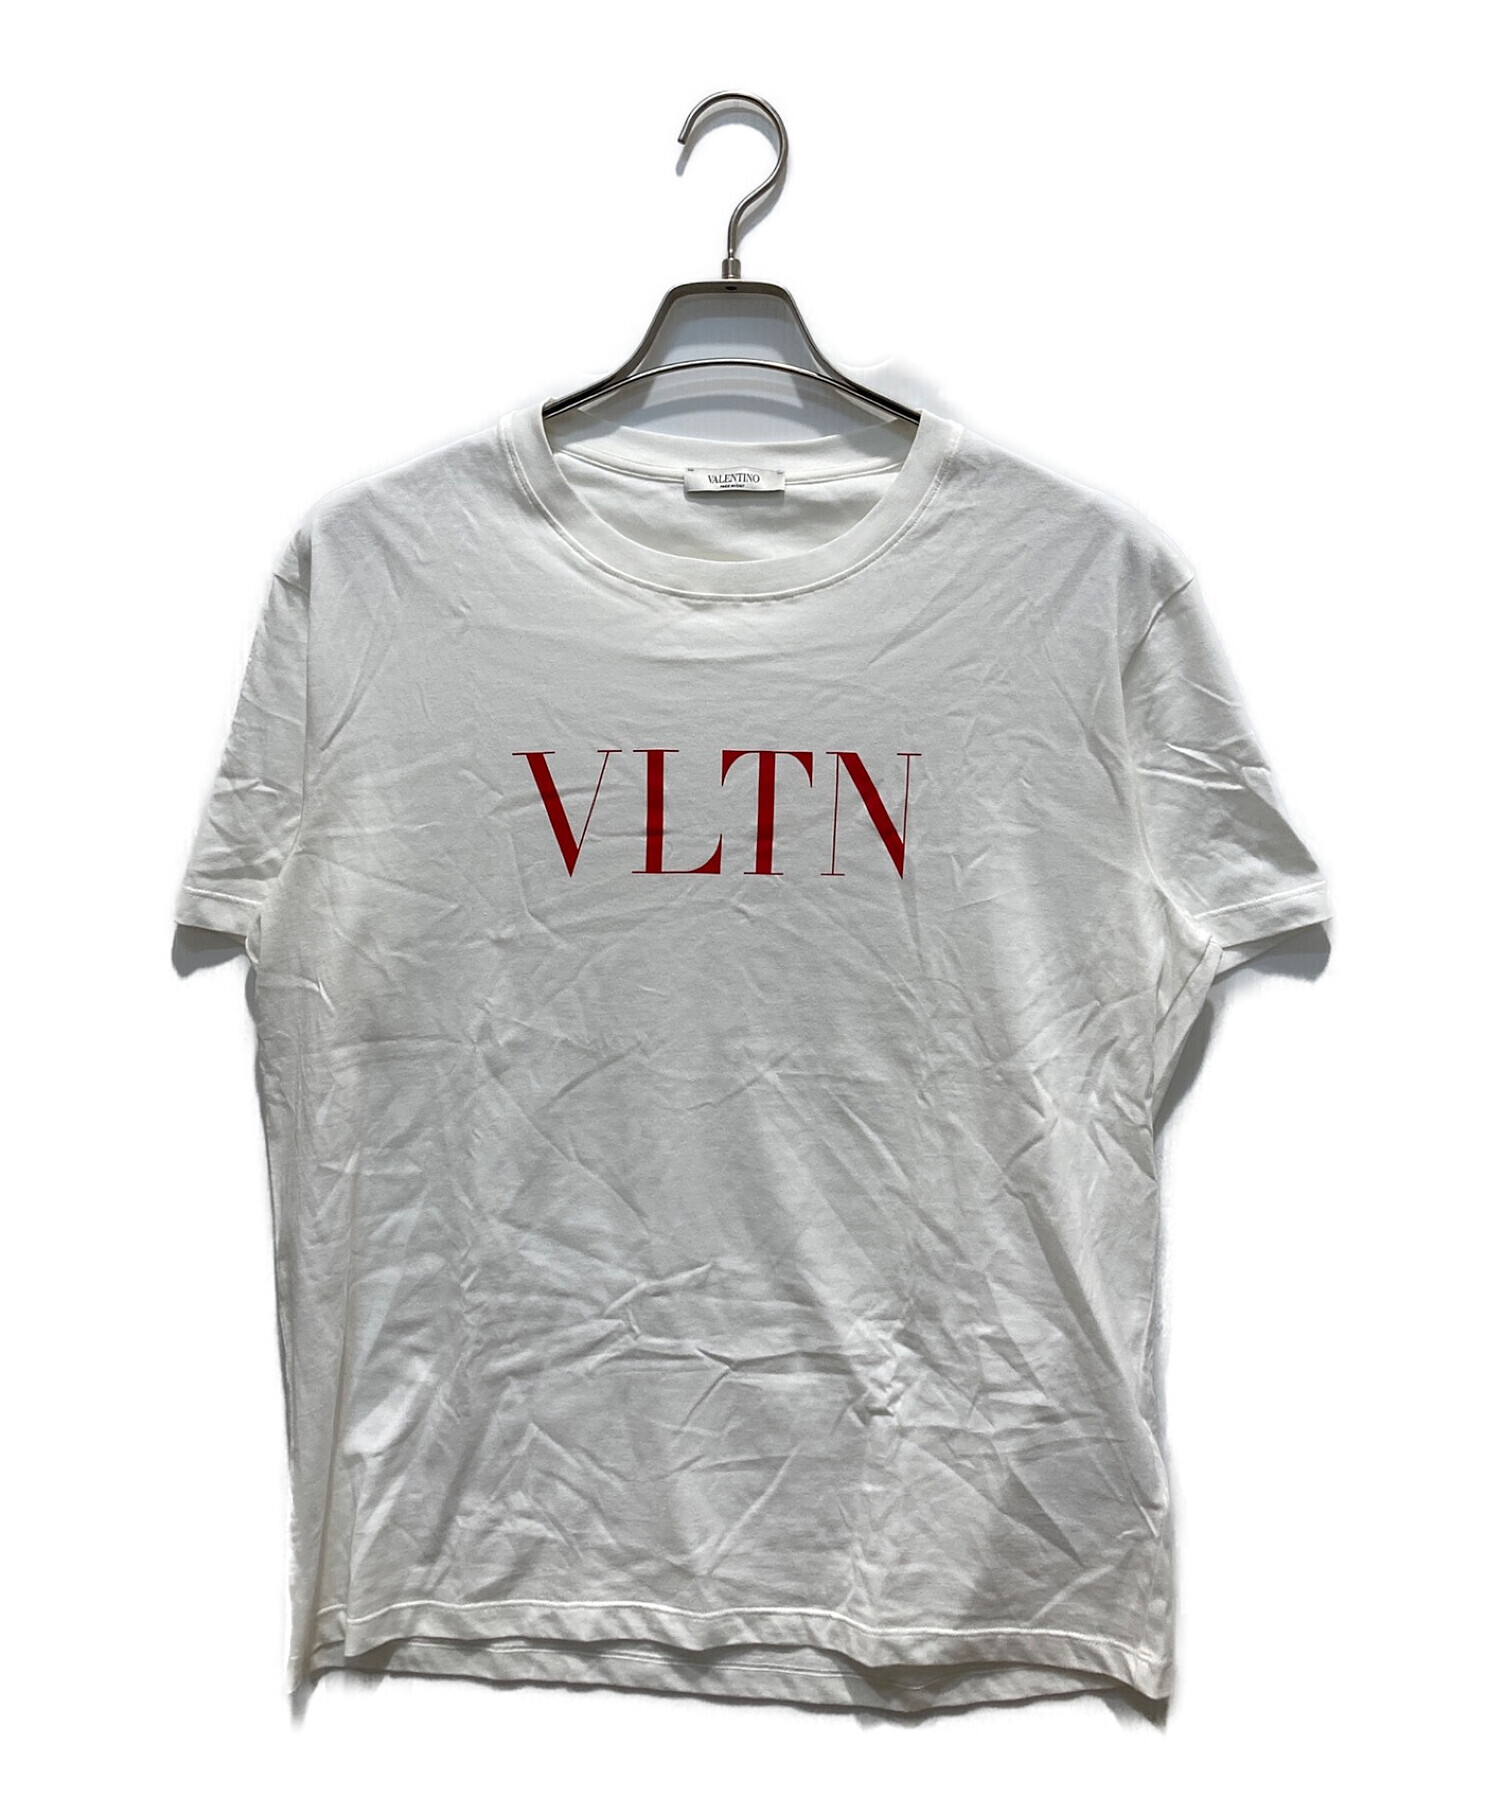 新品【 VALENTINO 】VLTN プリント Tシャツ M ホワイト ロゴ